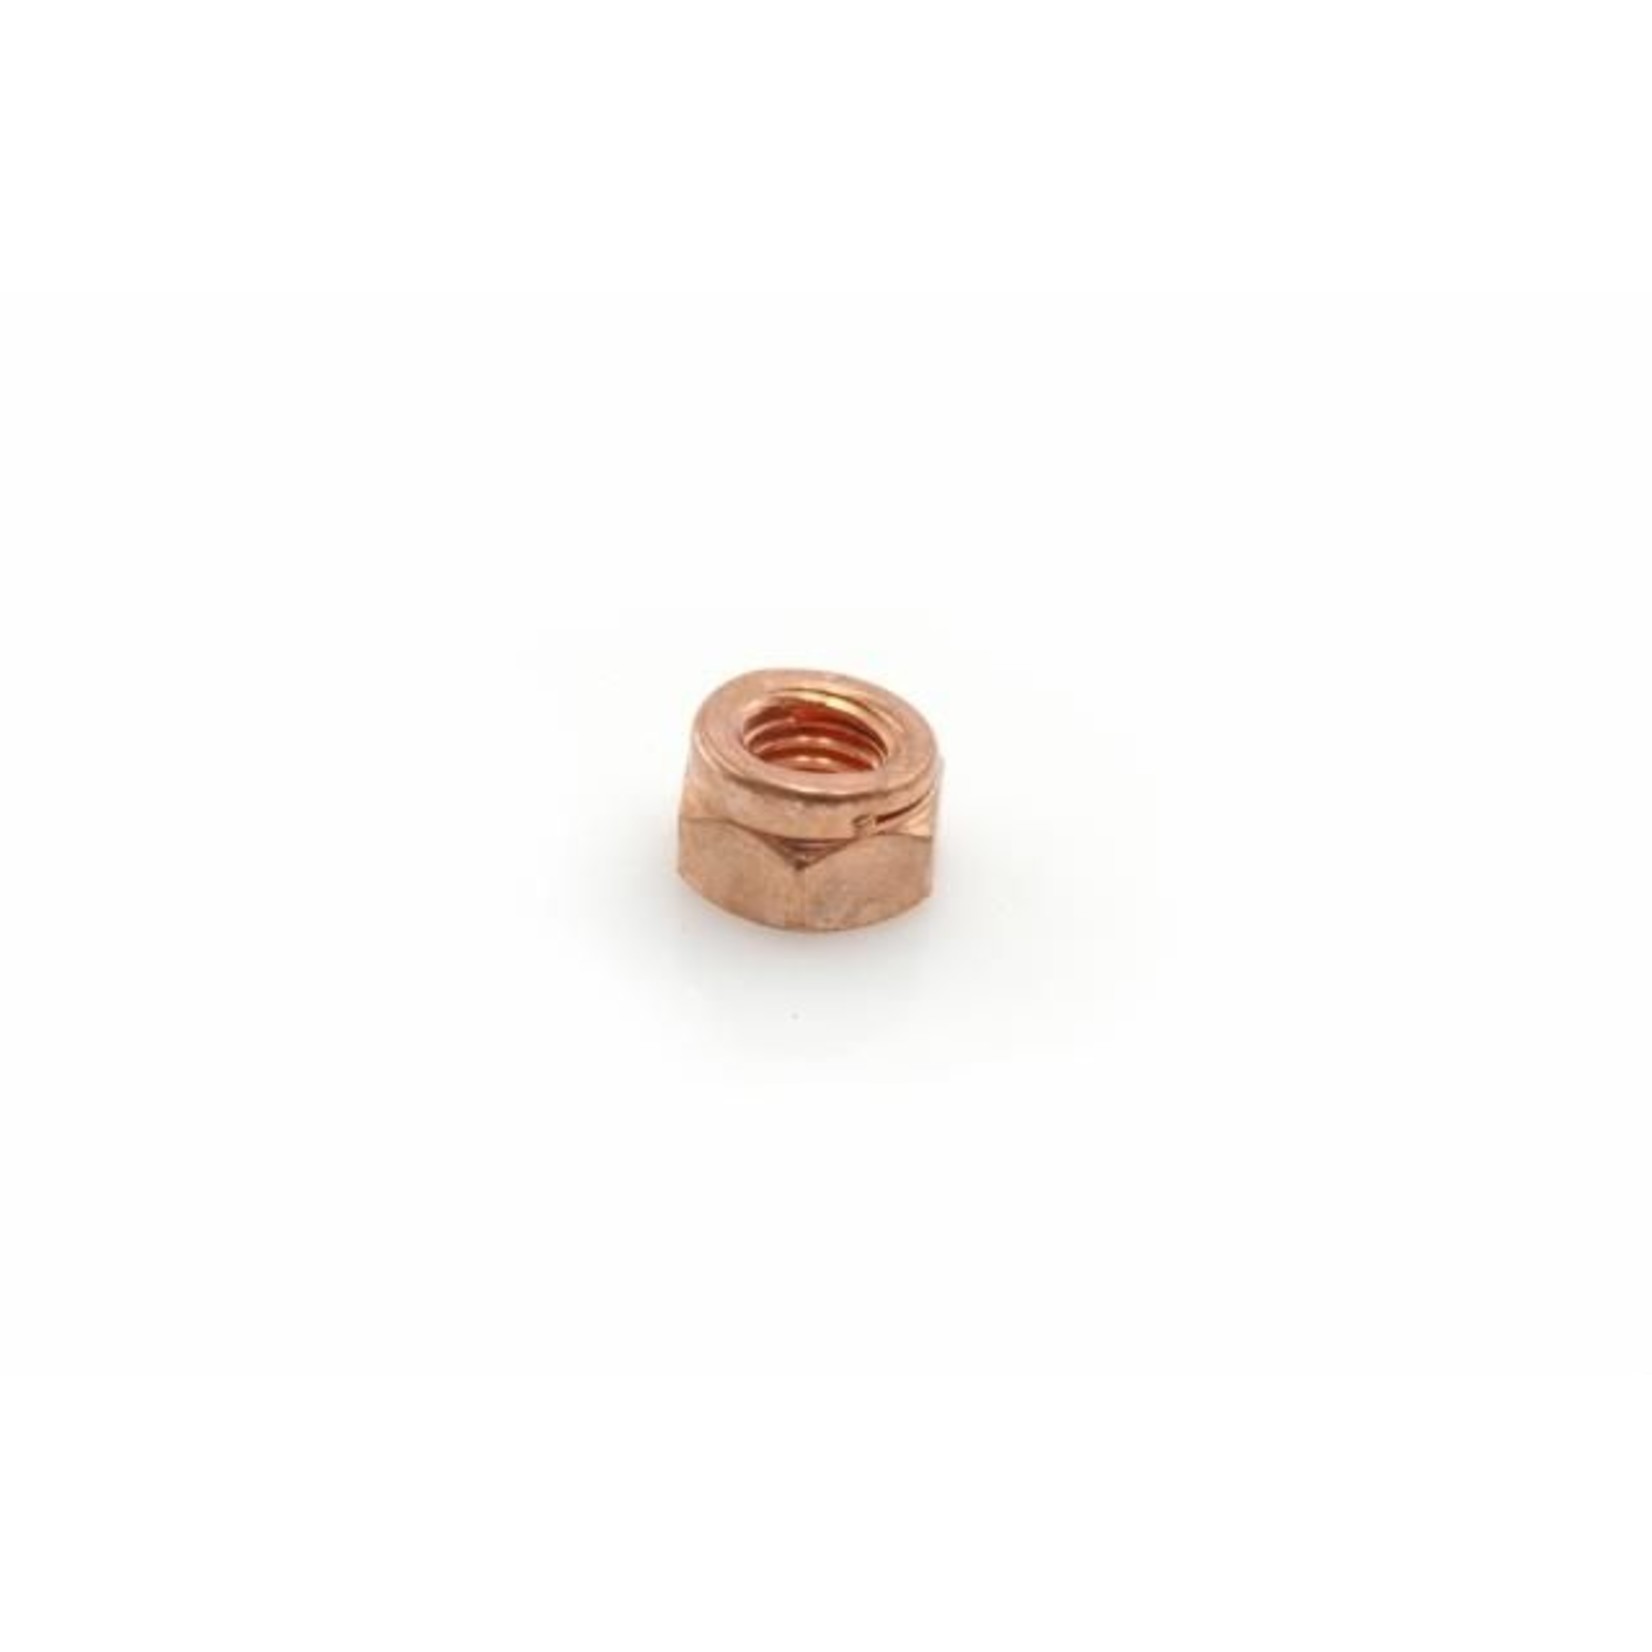 Nut manifold copper h8,5 x 12 Nr Org: 26150909